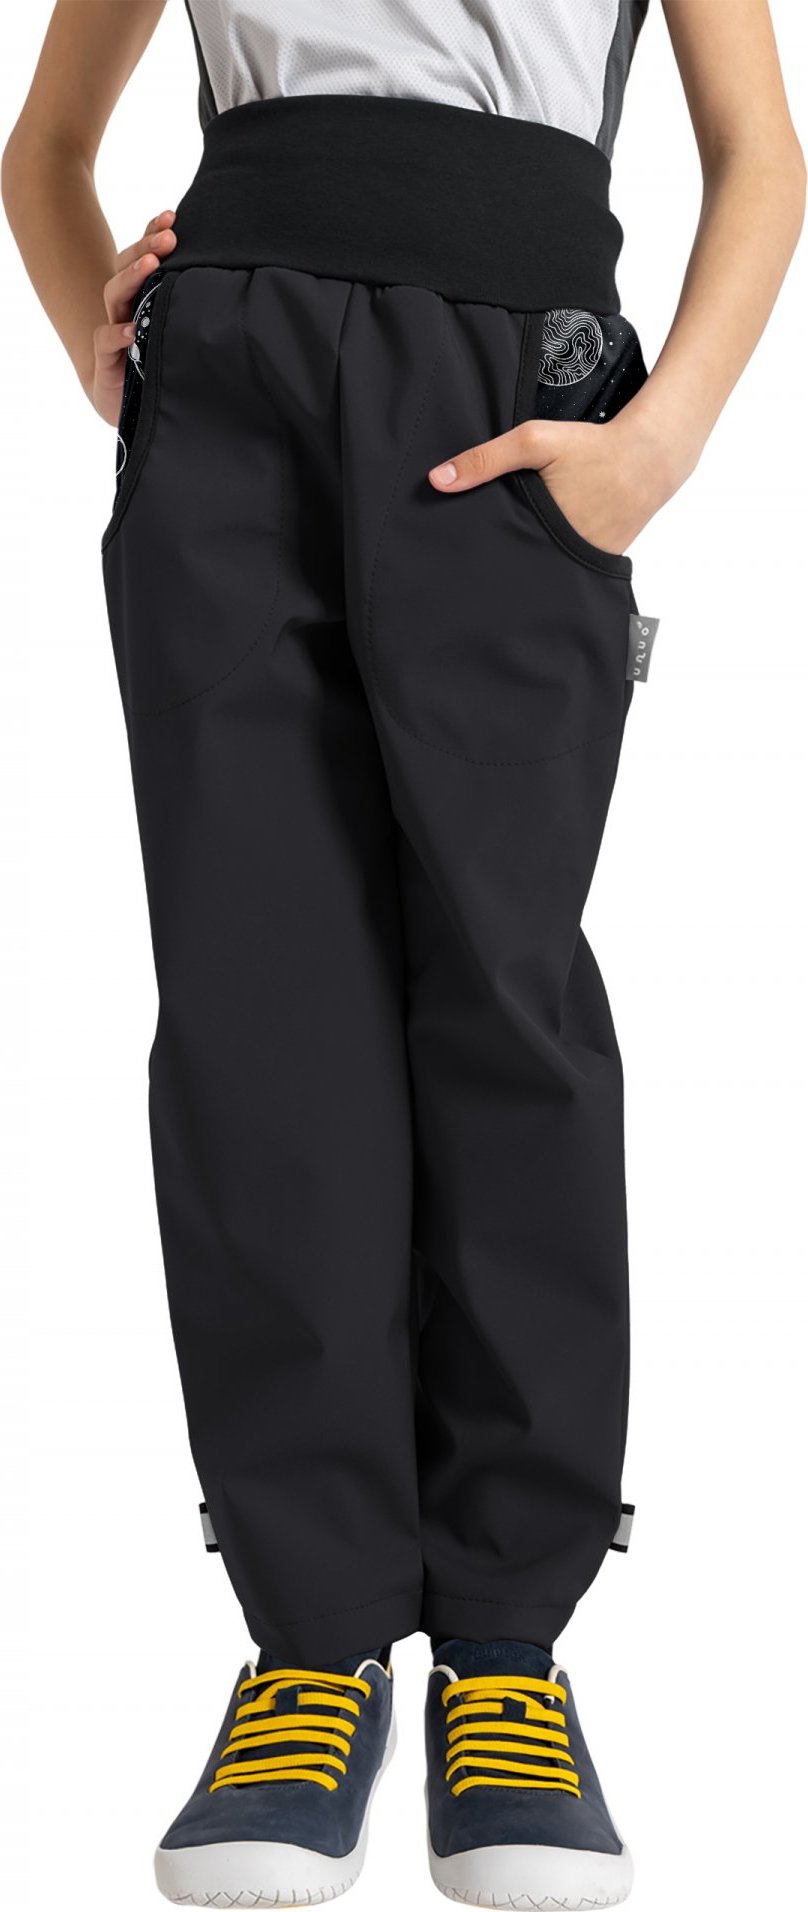 Dětské softshellové kalhoty UNUO Basic s fleecem, černé, Planety Velikost: 128/134